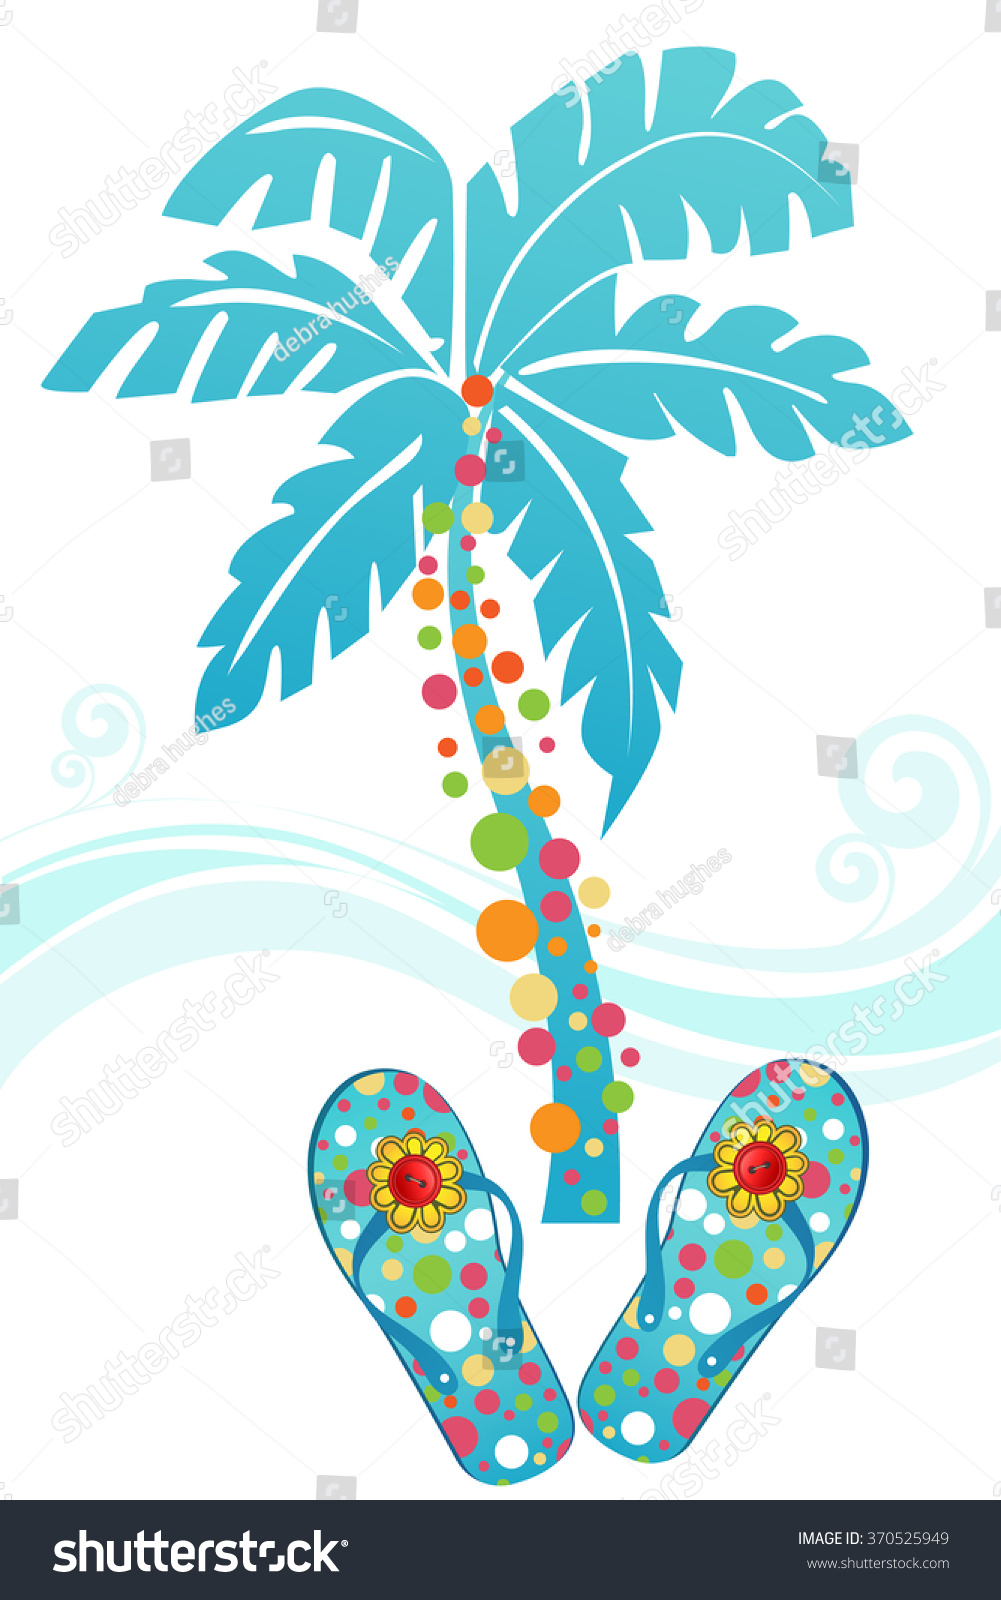 palm tree flip flops